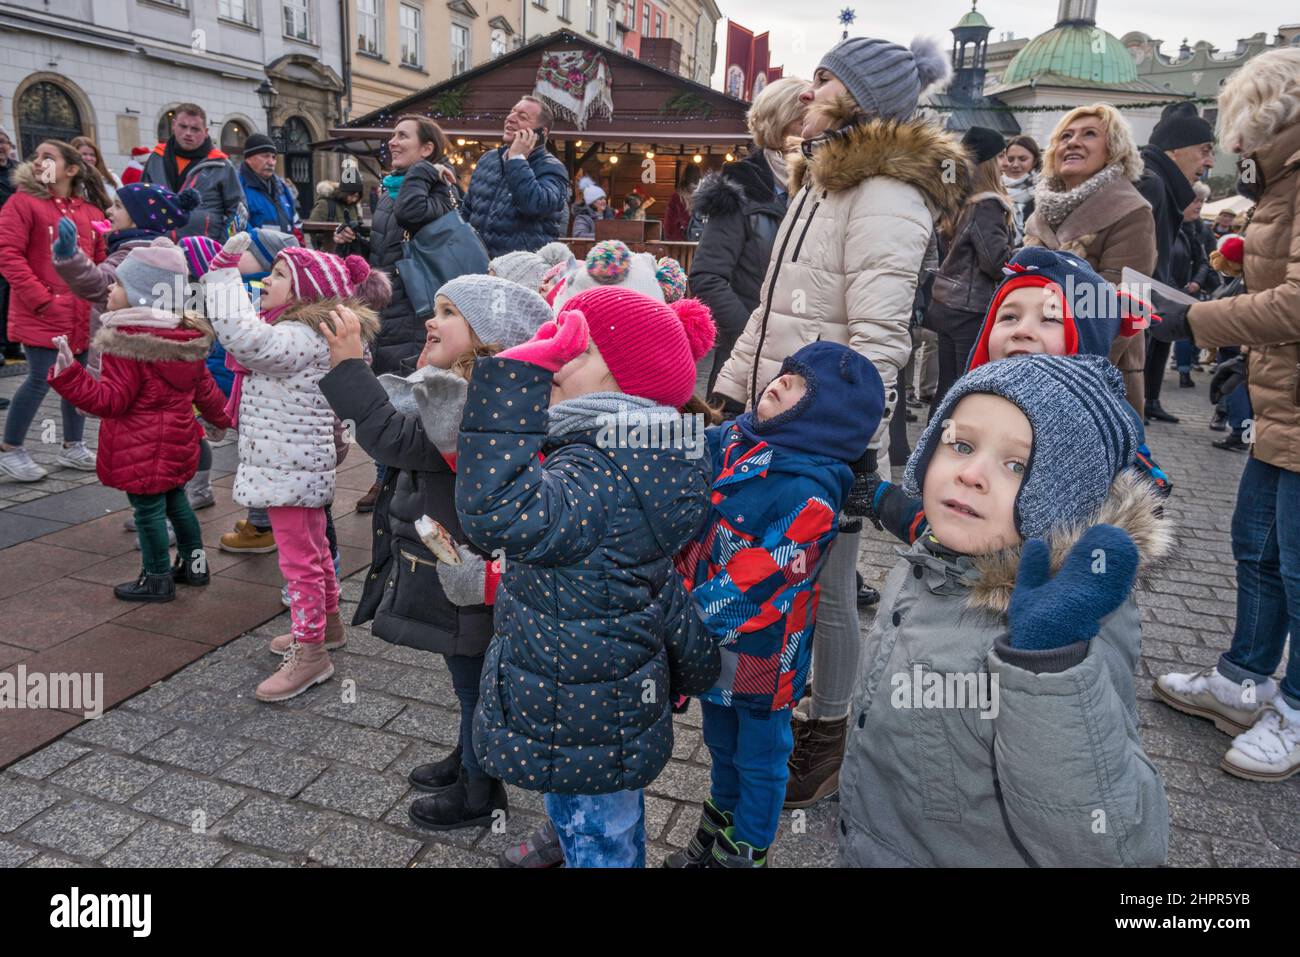 Jóvenes escolares, profesor, mirando las escenas de la natividad de Kraków Szopka, exhibidas durante el concurso anual en diciembre, en el monumento Adam Mickiewicz, Plaza del Mercado Principal, Kraków, Polonia Foto de stock